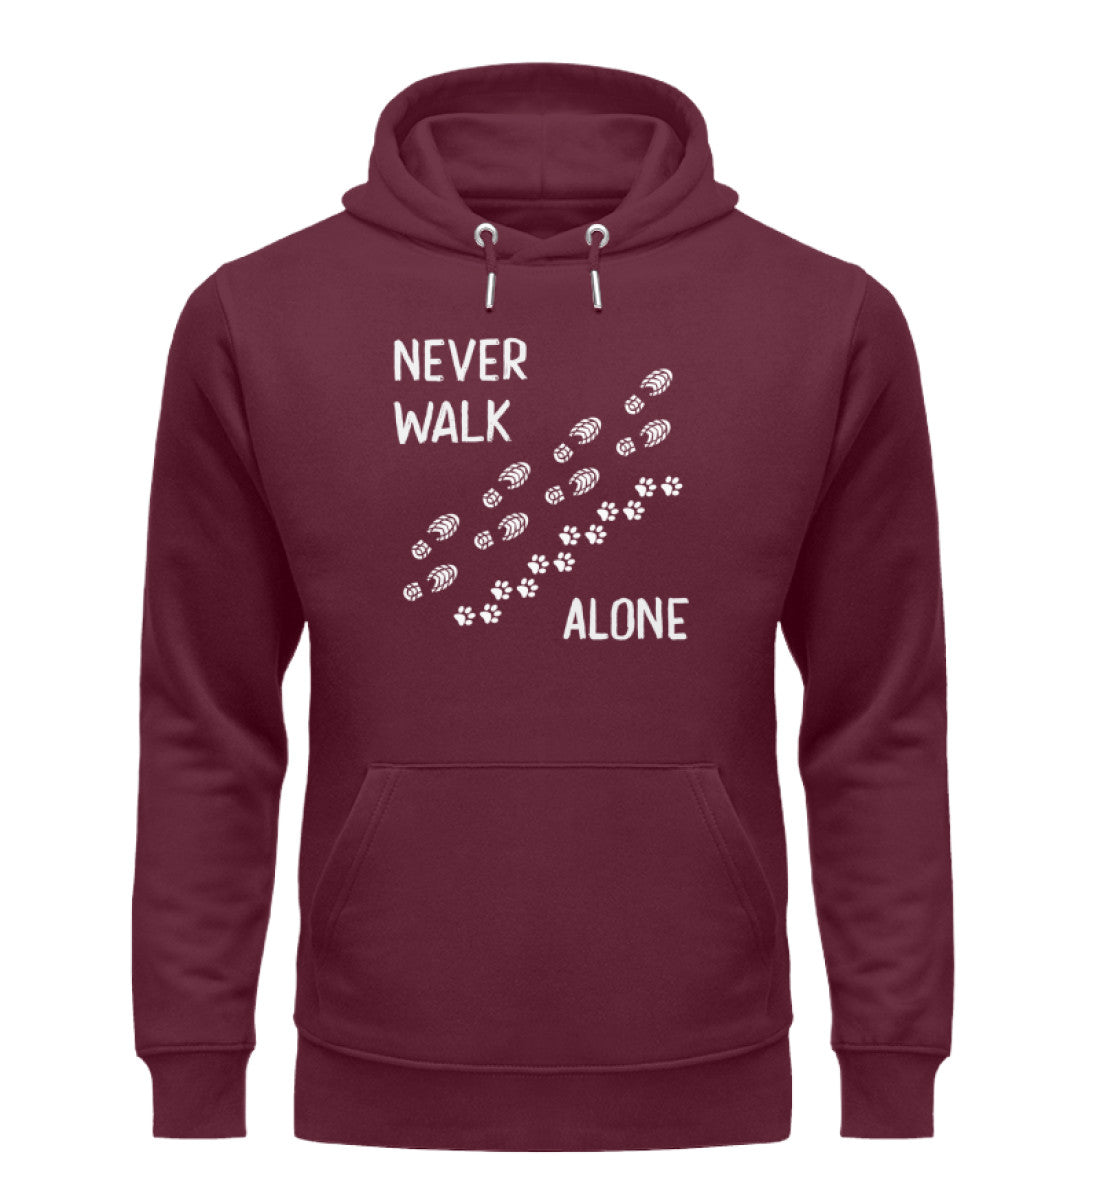 Never walk alone - Unisex Premium Organic Hoodie wandern Weinrot